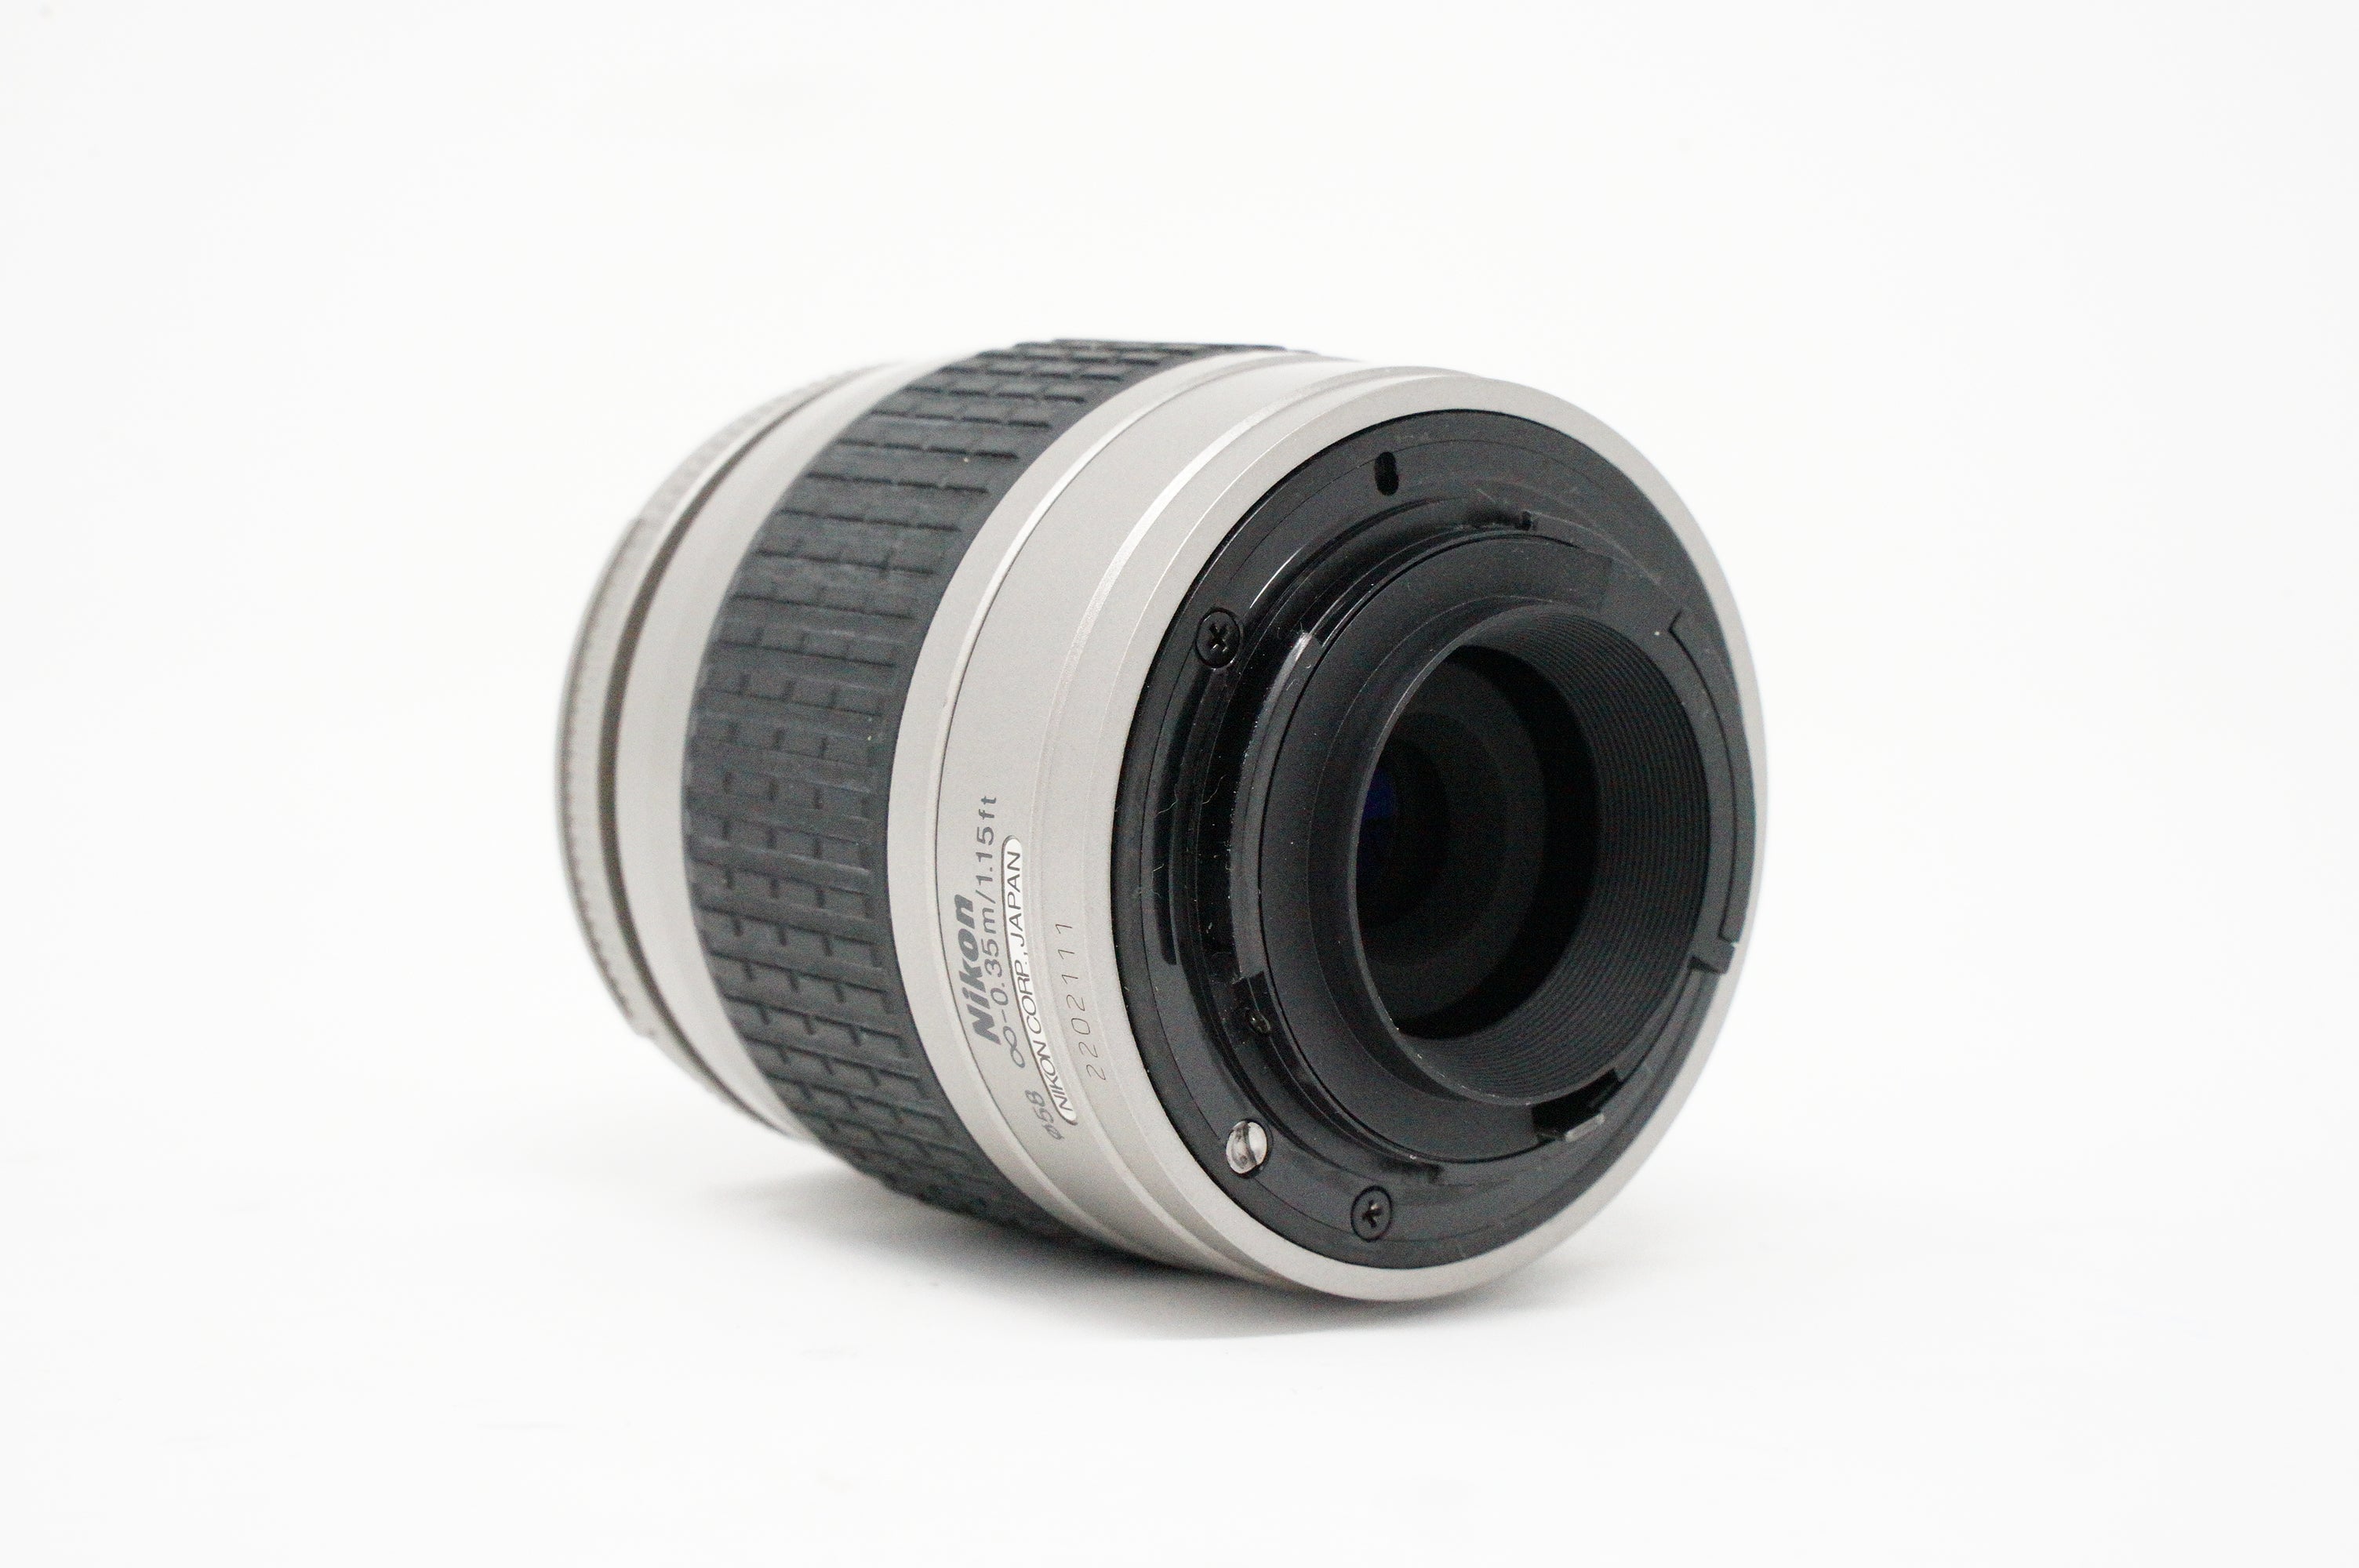 Image of Nikon AF Nikkor 28-80mm F/3.5-5.6G lens rear side